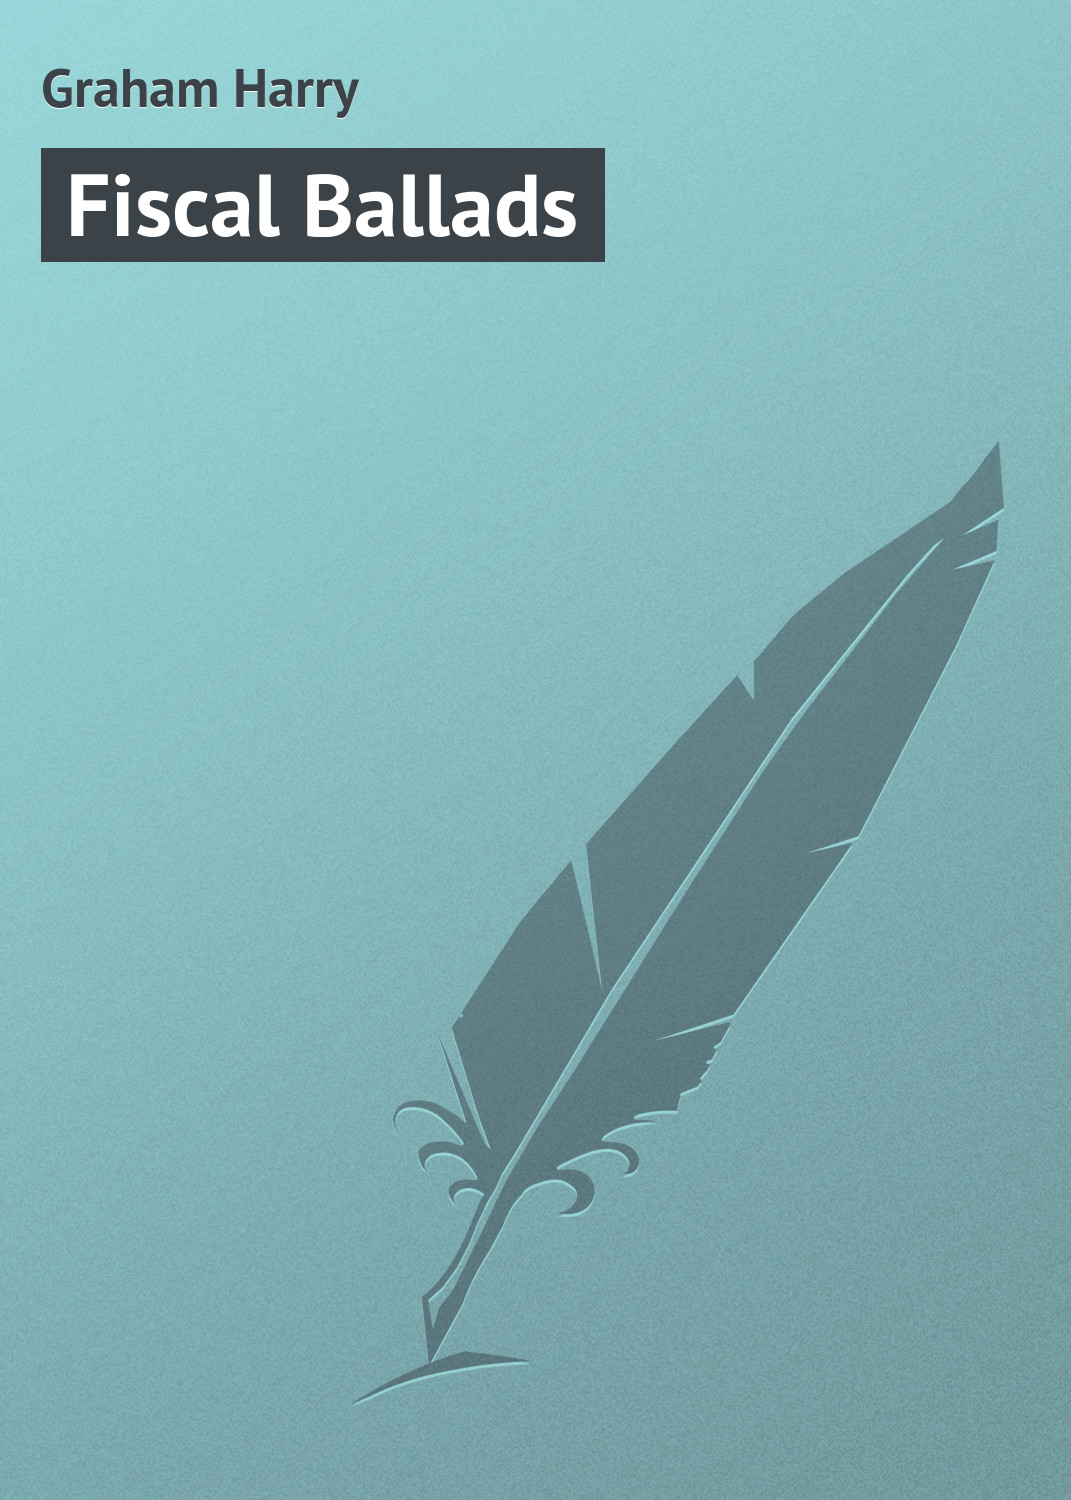 Книга Fiscal Ballads из серии , созданная Harry Graham, может относится к жанру Поэзия, Зарубежная классика, Зарубежные стихи. Стоимость электронной книги Fiscal Ballads с идентификатором 23160251 составляет 5.99 руб.